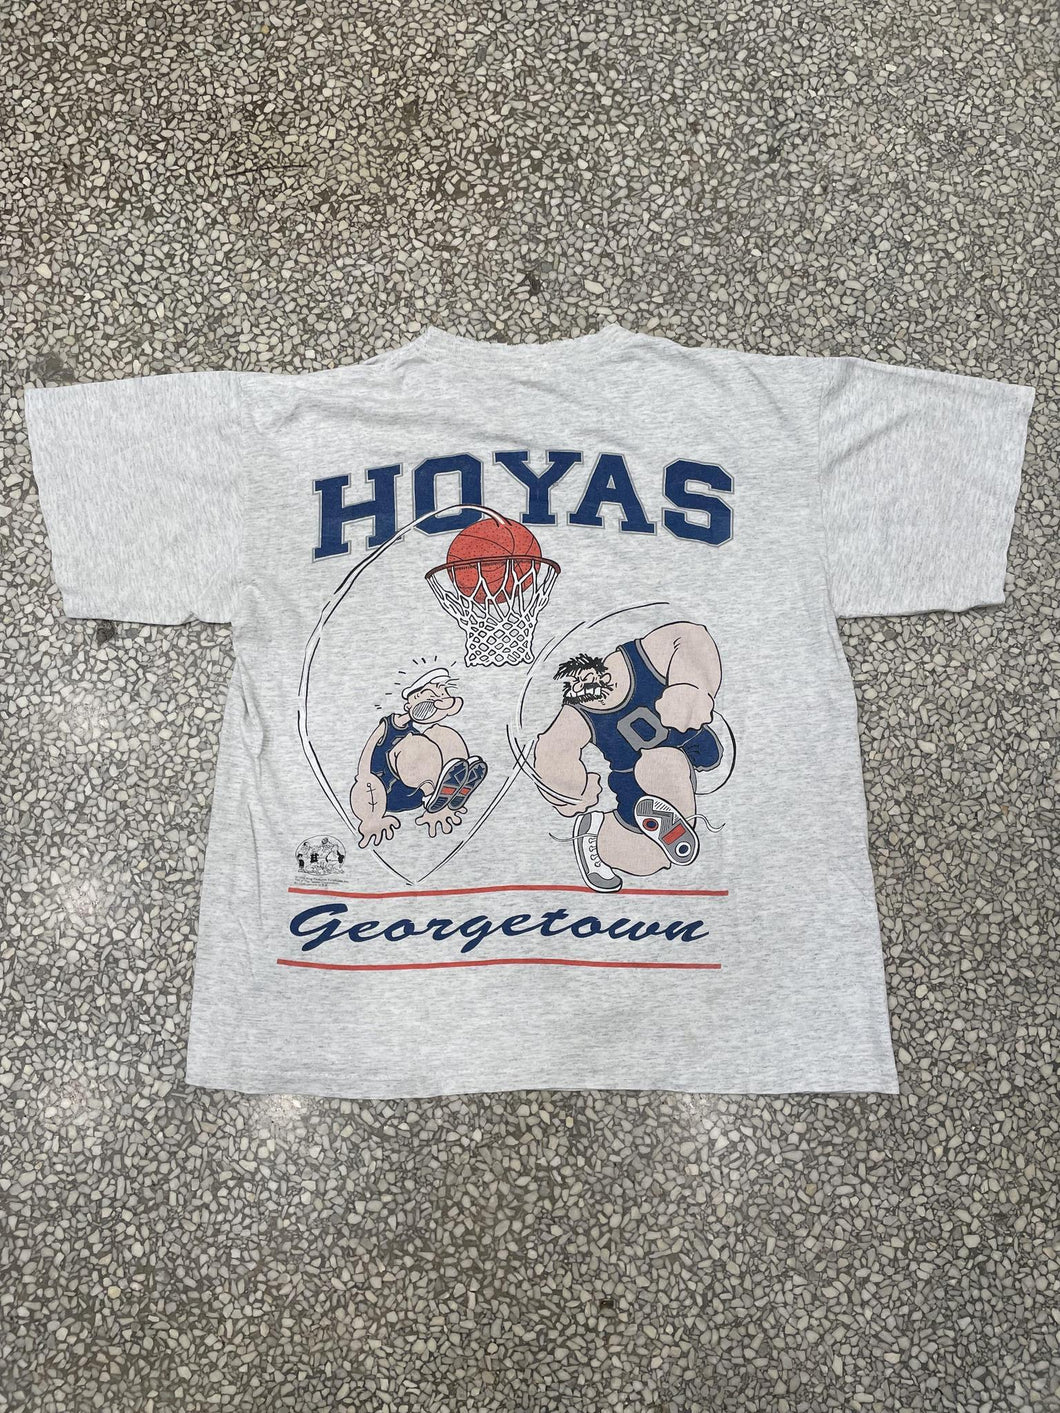 Georgetown Hoyas Popeye 1994 ABC Vintage 